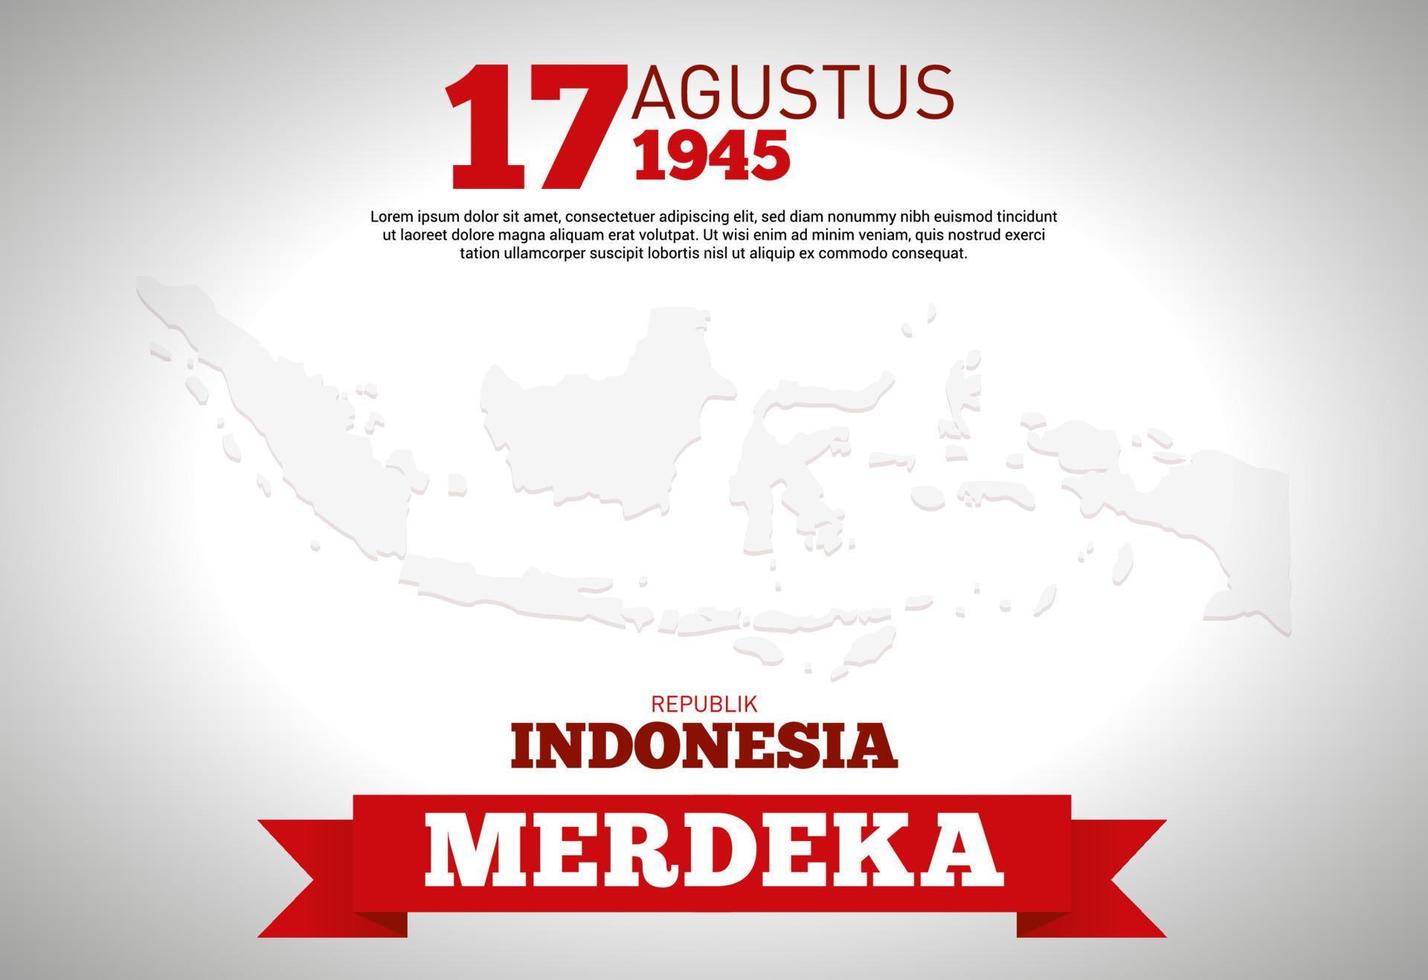 eine illustration des indonesischen archipels mit der inschrift zur feier des indonesischen unabhängigkeitstages am 17. august 1945 vektor